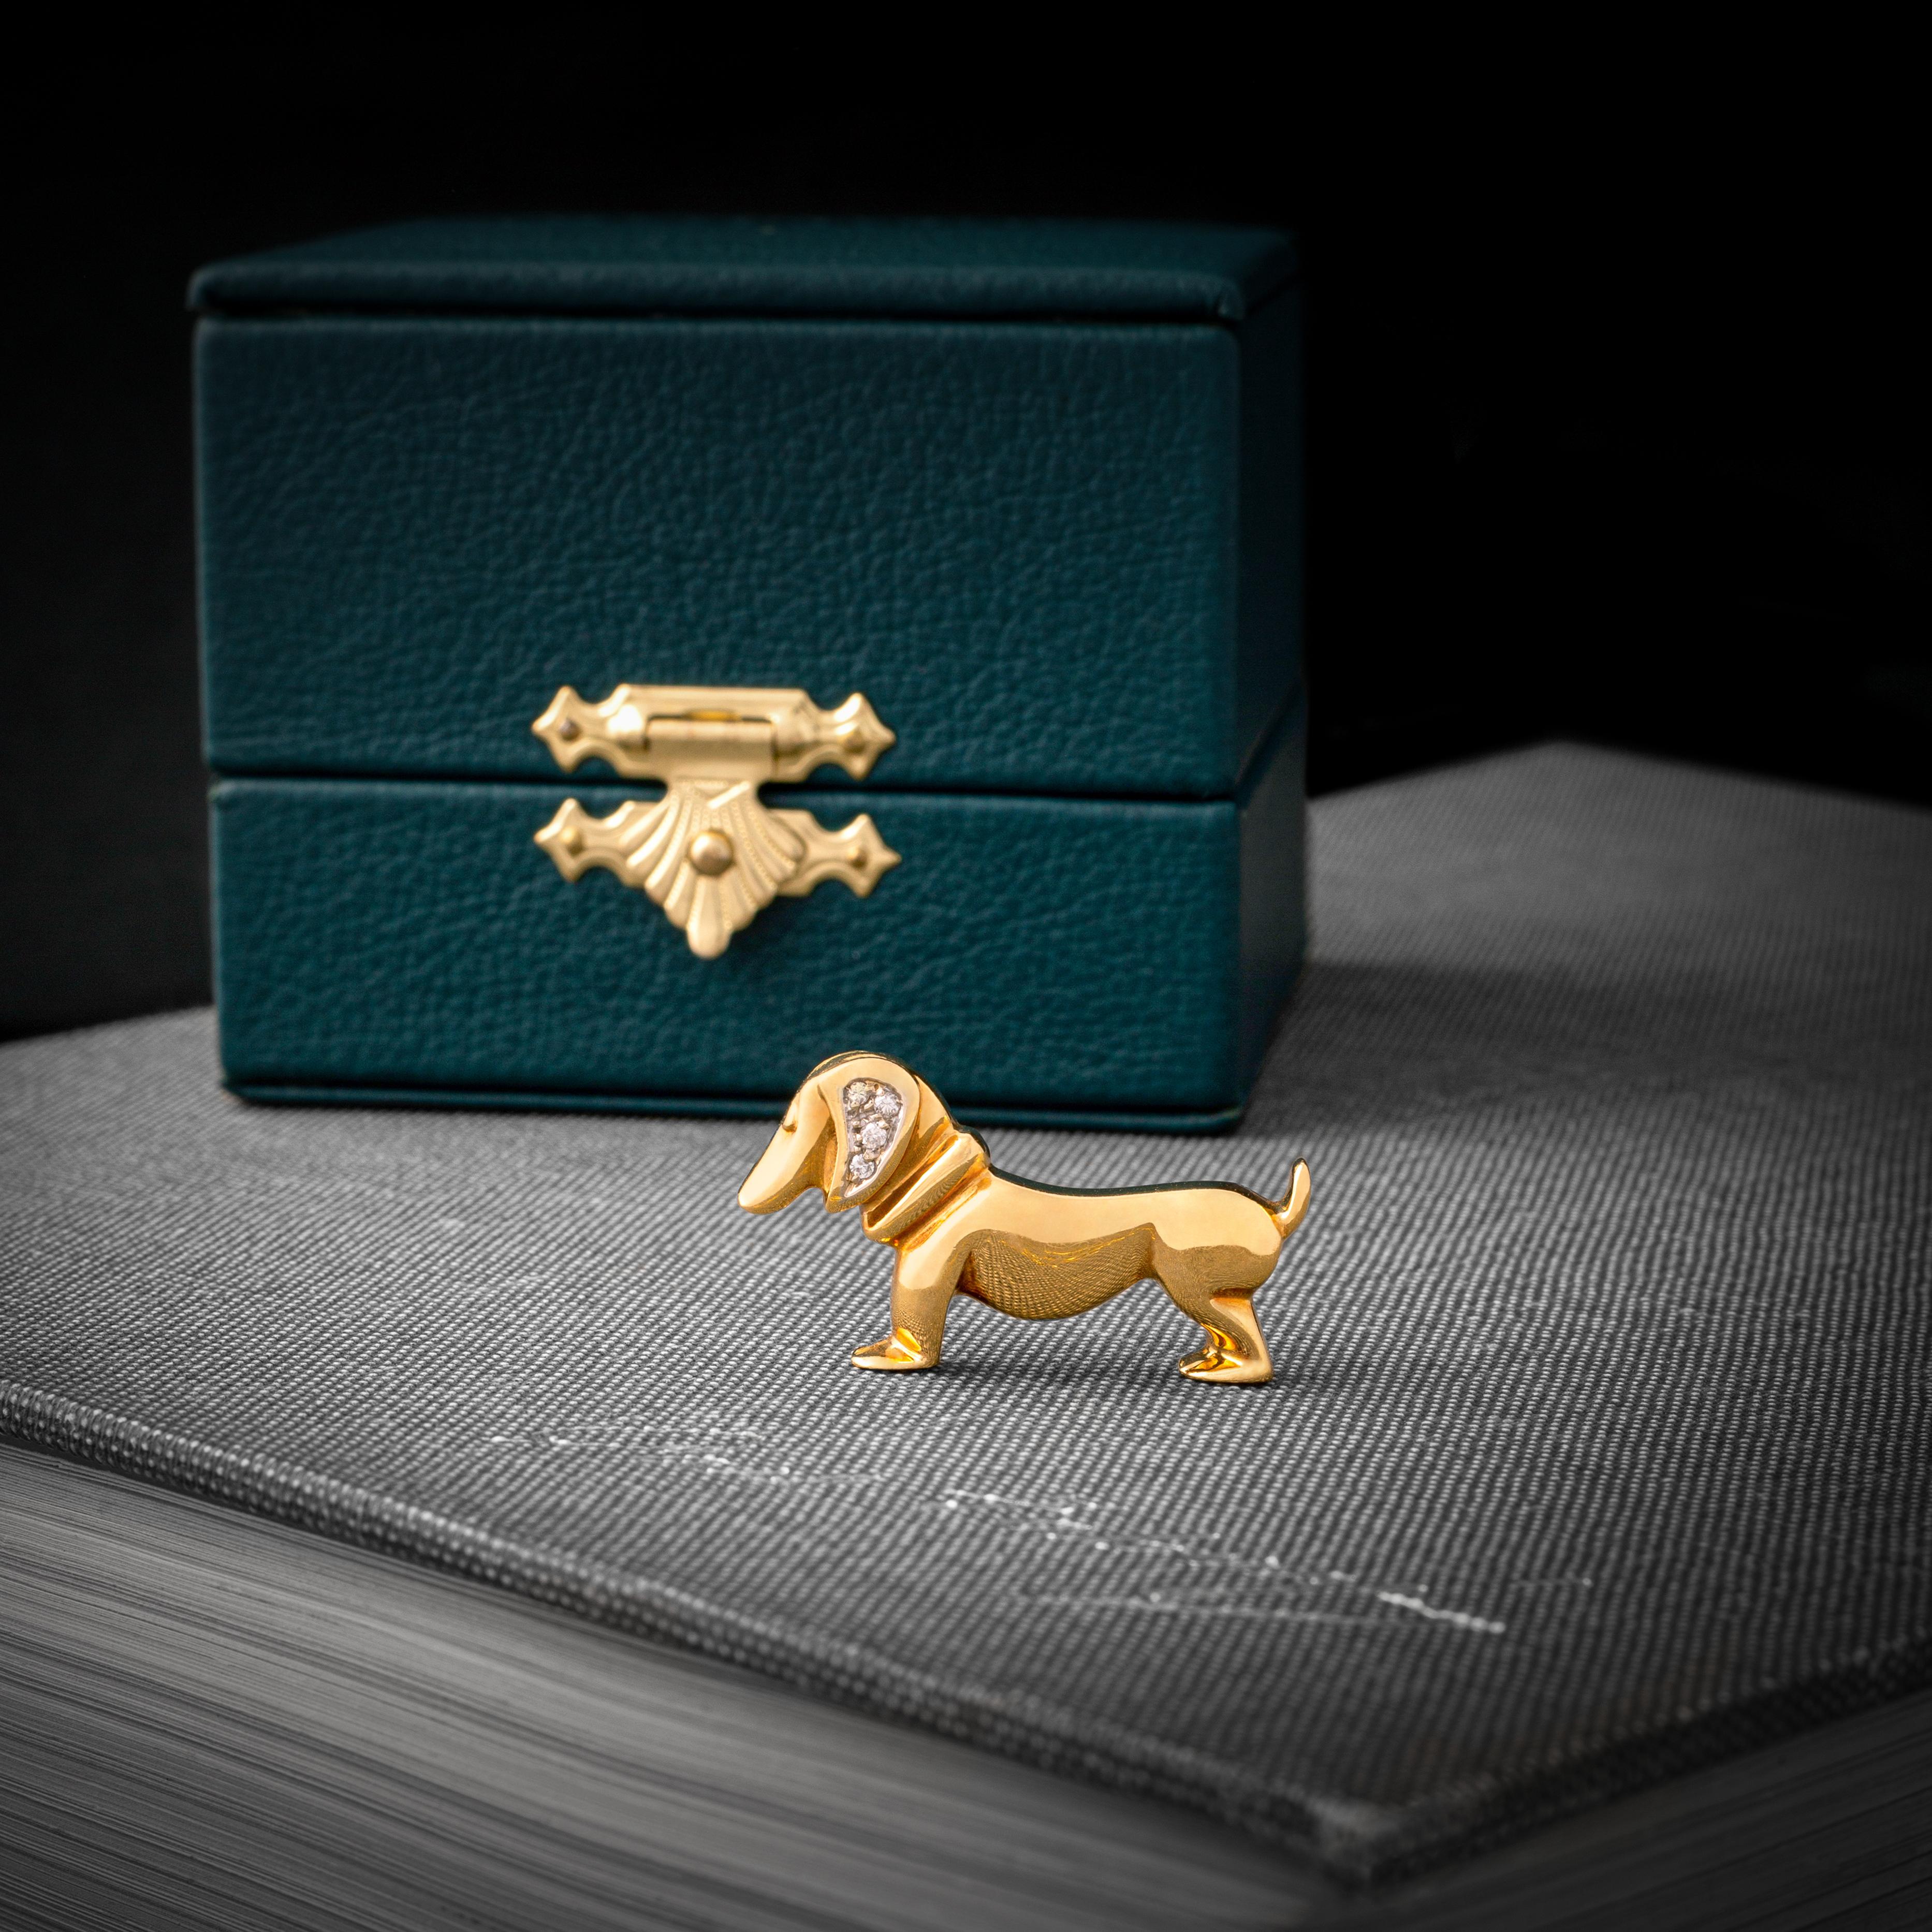 1980S Französisch Diamant und Gelbgold 18k Dackel Hund Brosche Clip.

Gesamtlänge: 1,18 Zoll (3,00 Zentimeter).
Gesamthöhe: 0,79 Zoll (2,00 Zentimeter).

Nicht ganz so niedlich wie ein echter Dackel, aber fast genauso liebenswert.

Wir sind dafür